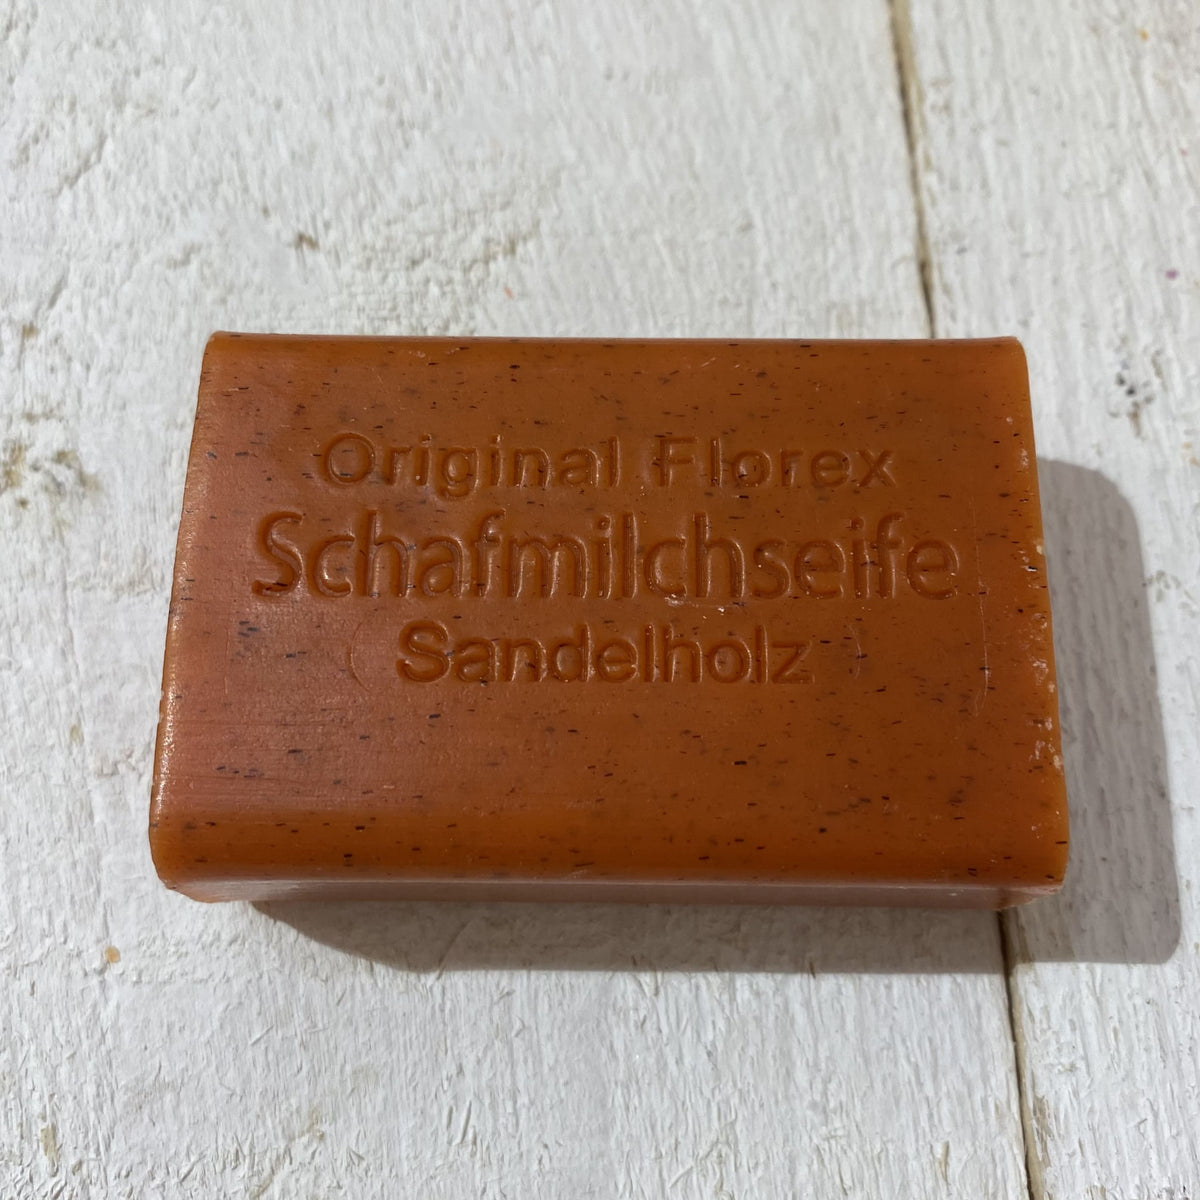 Seife Sandelholz Schafmilch, Walhalla Lamm